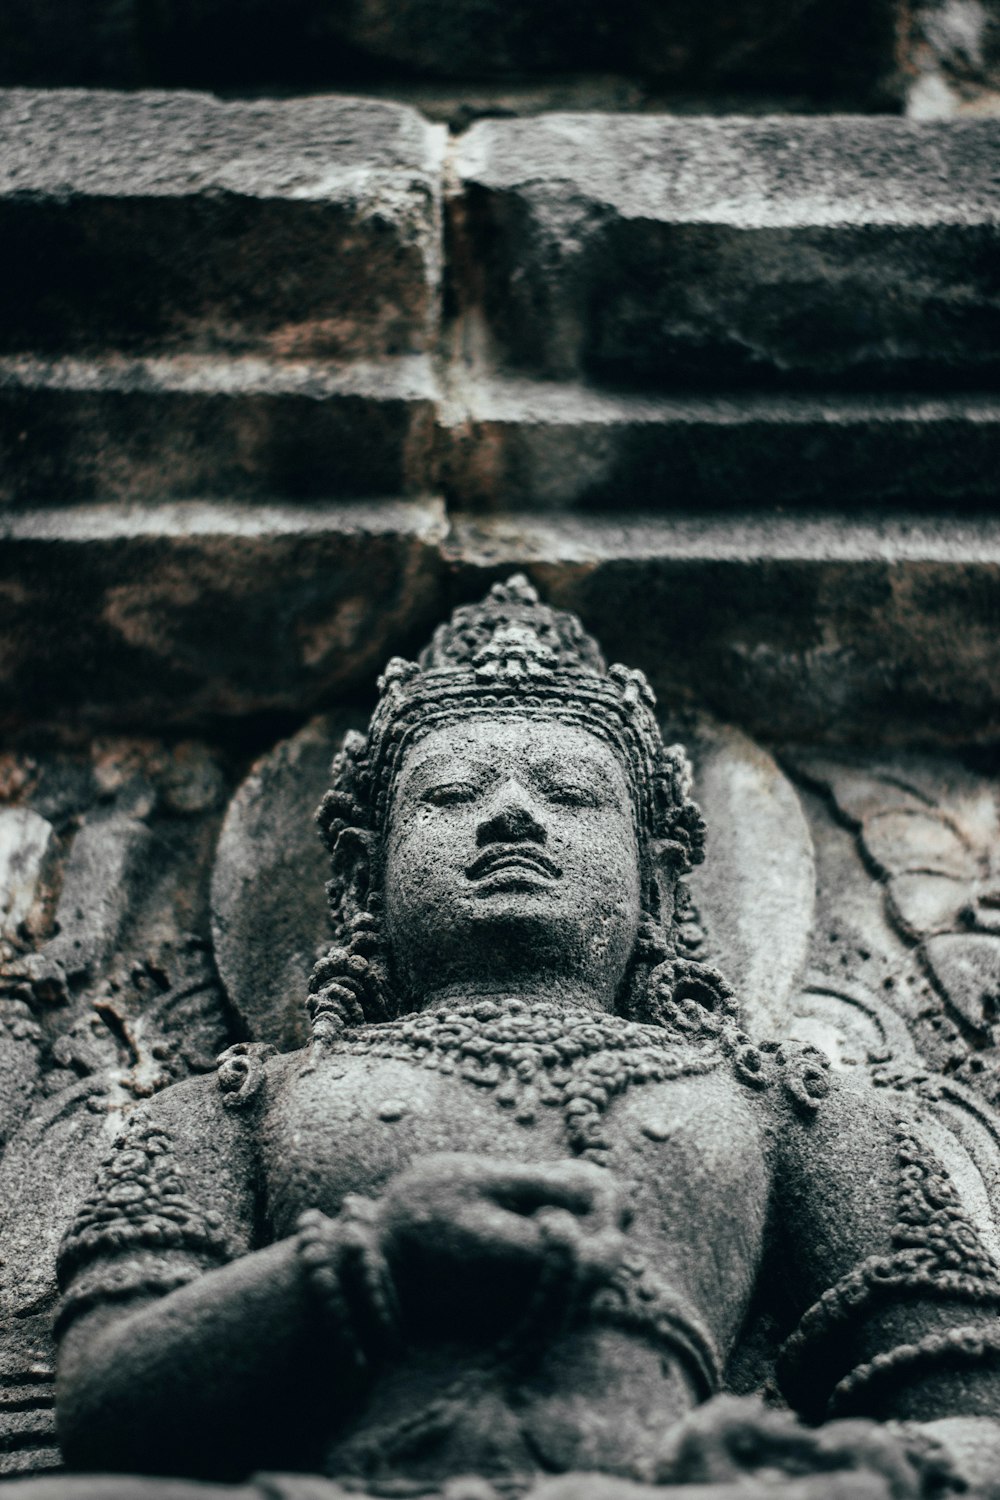 Une statue de Bouddha devant un mur de briques